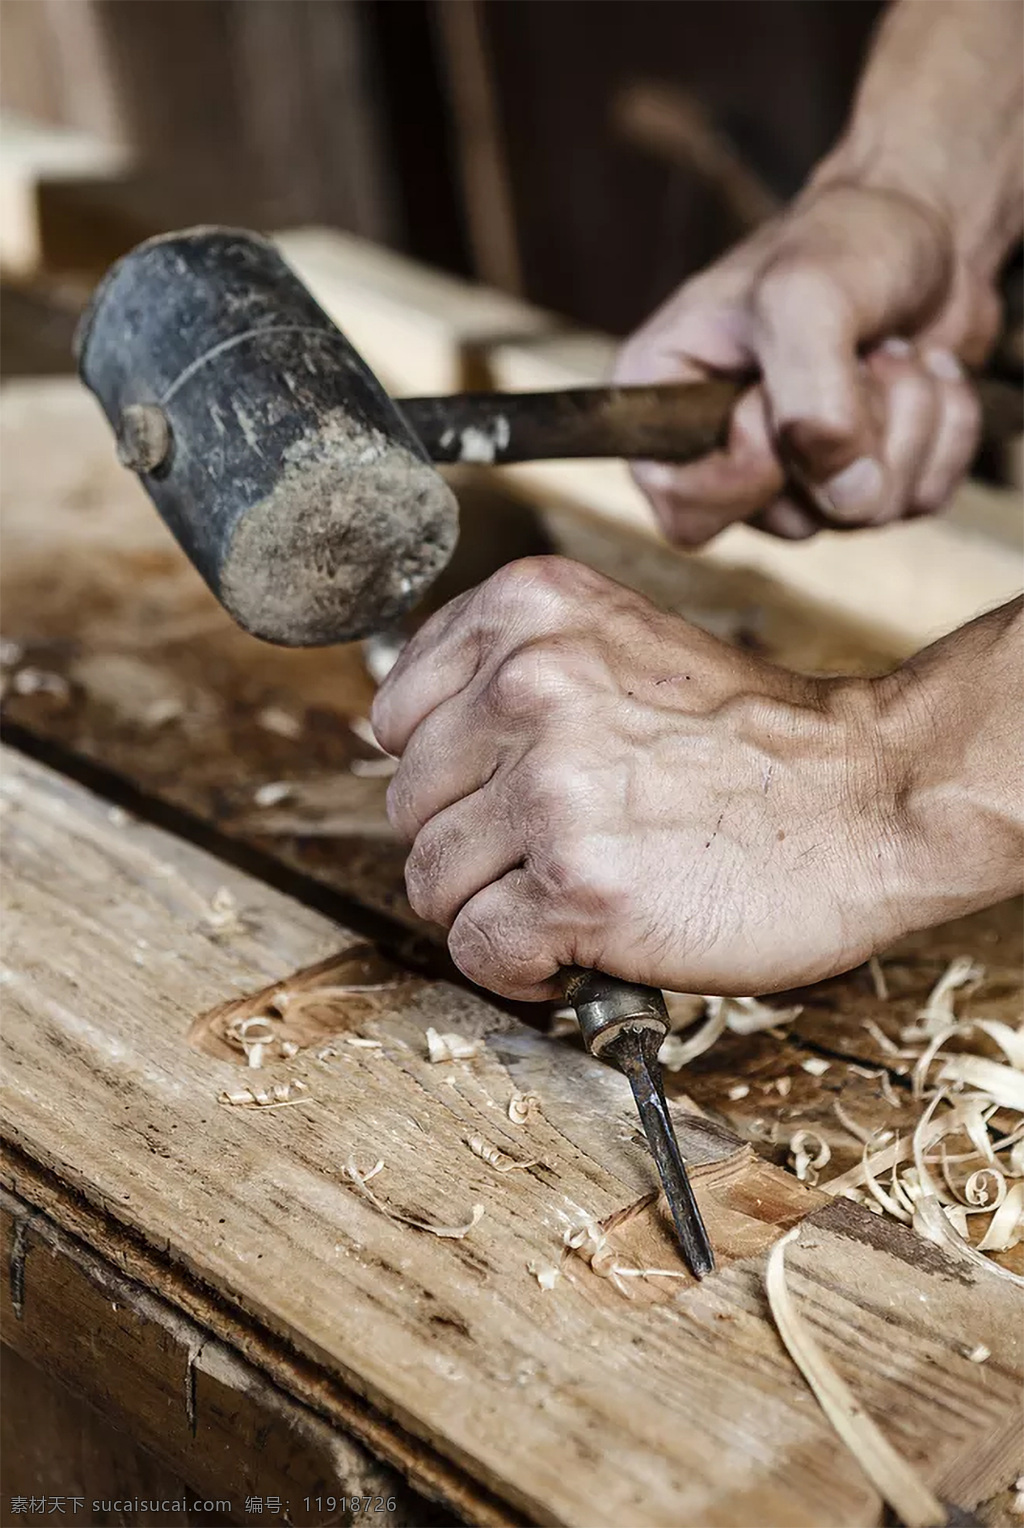 木匠图片 木头 wood 木材 工匠 木匠 橡木 橡胶木 年轮 树棍 树材 雕刻木材 人物图库 职业人物